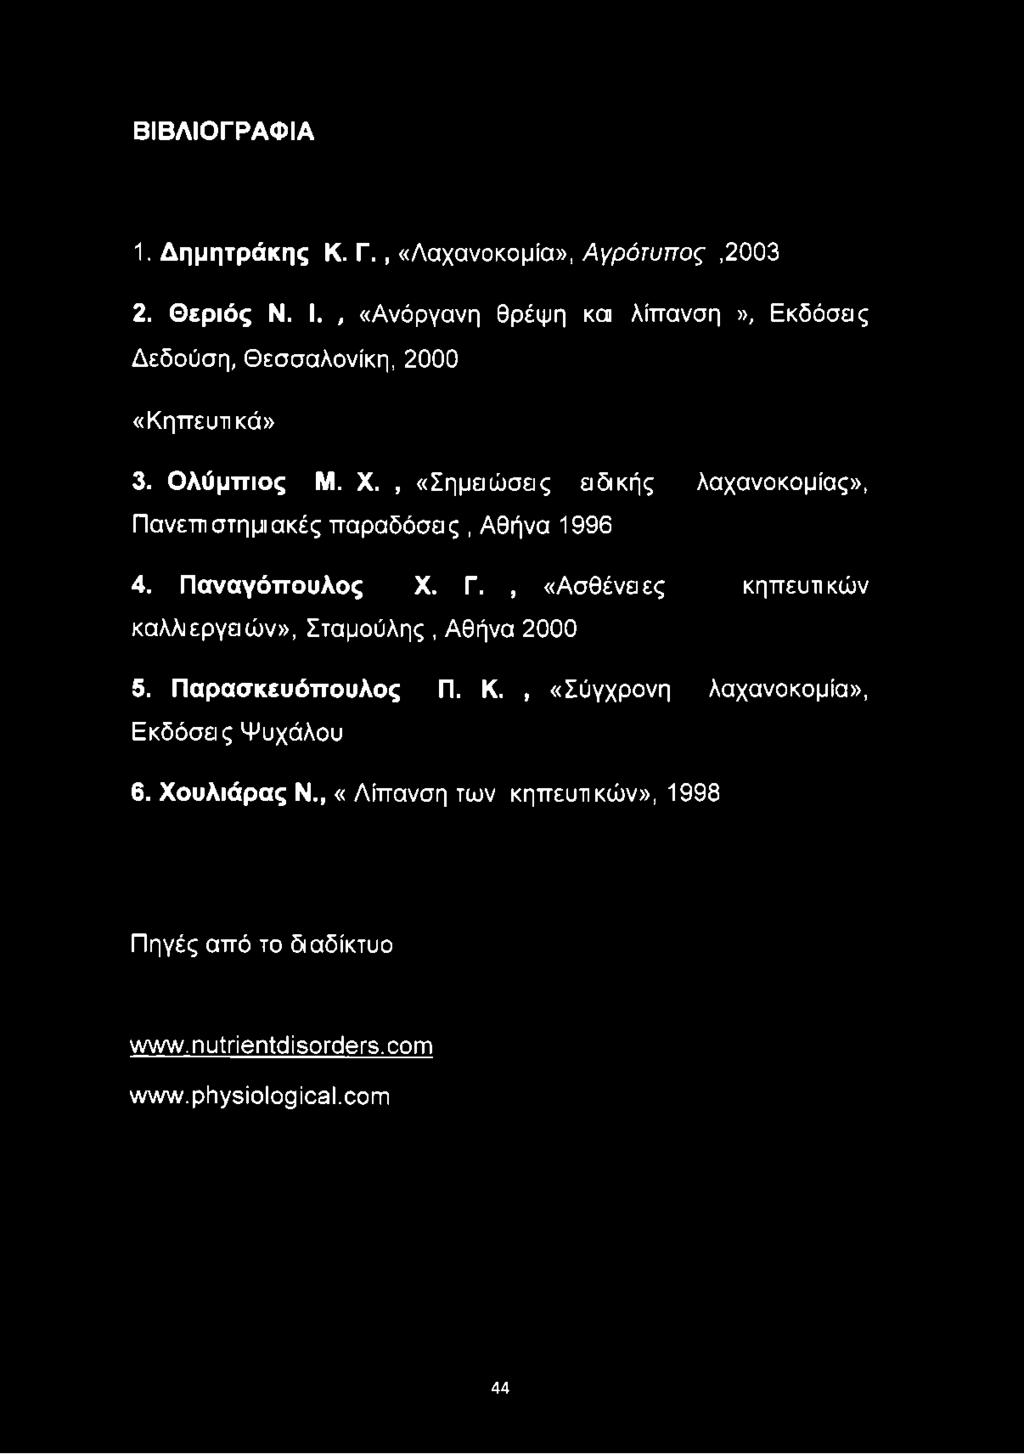 , «Σημειώσεις ειδικής λαχανοκομίας», Πανεπιστημιακές παραδόσεις, Αθήνα 1996 4. Παναγόπουλος X. Γ.